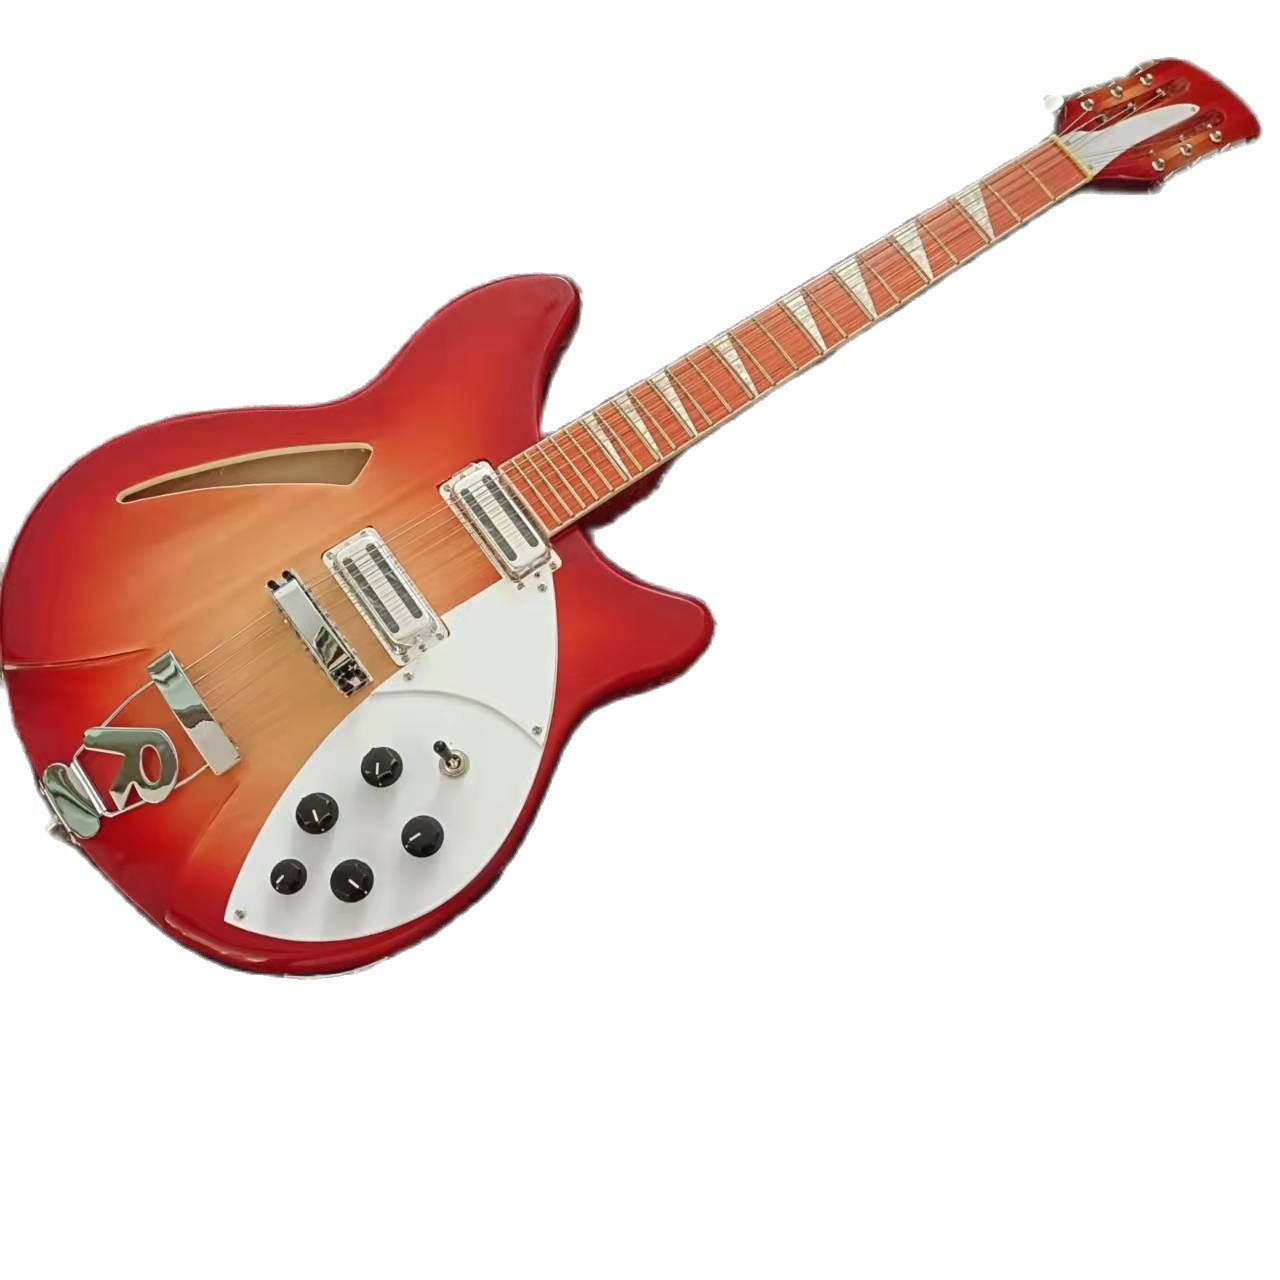 Model 360 Guitar